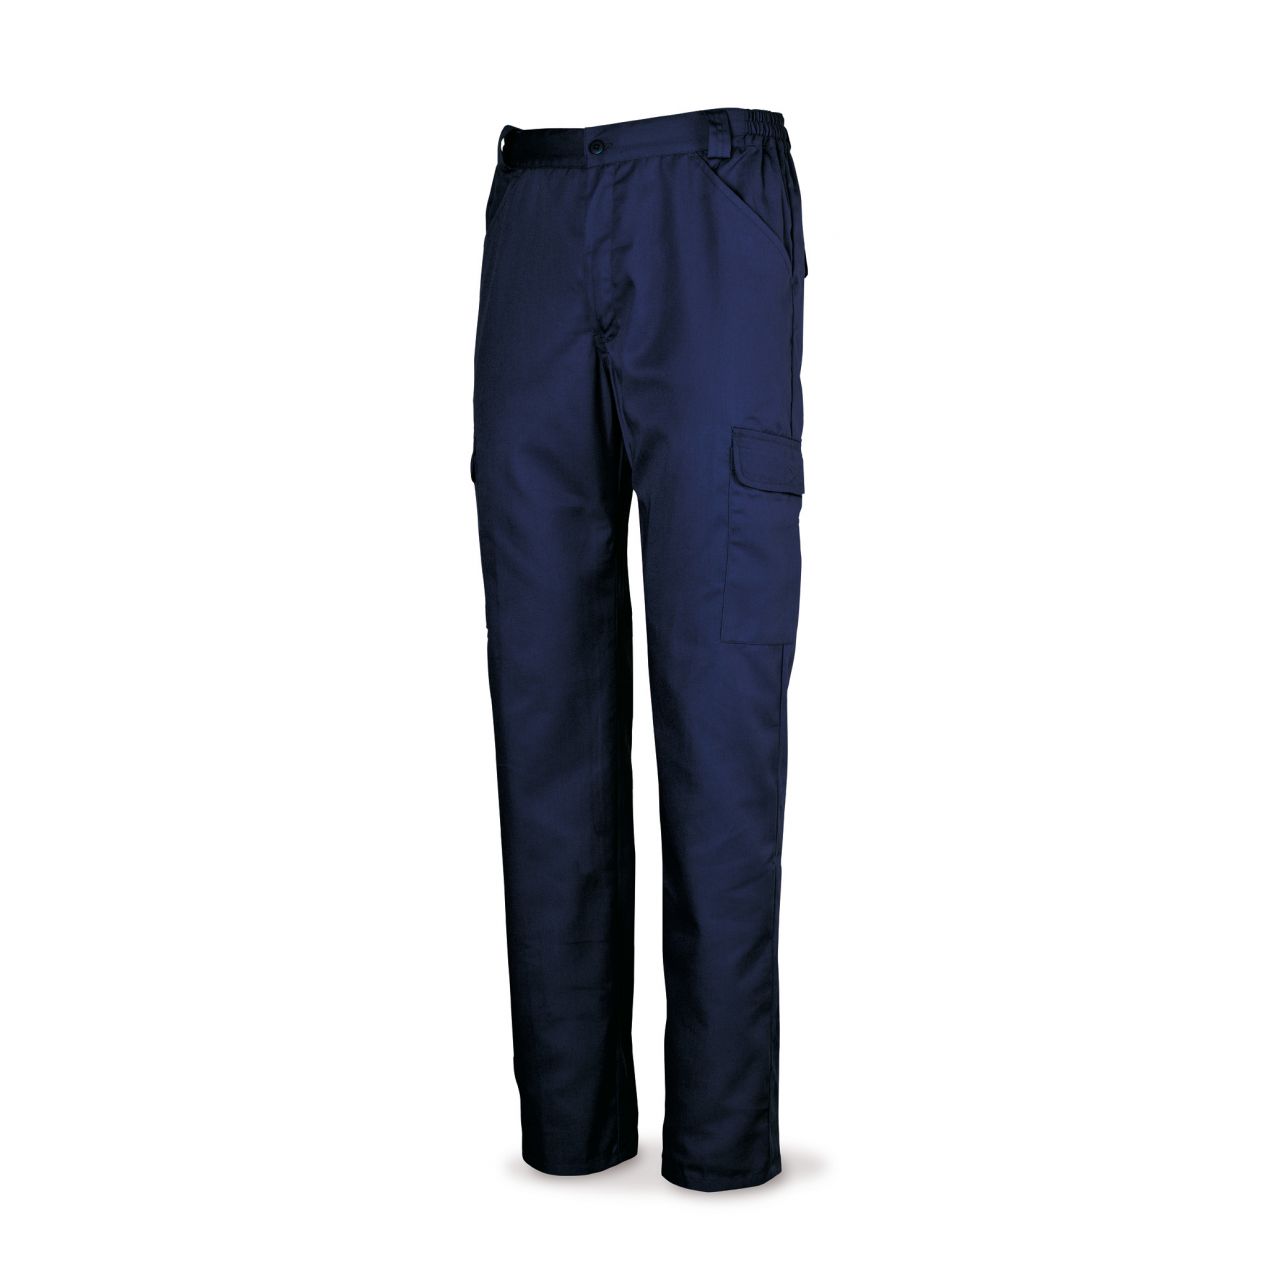 Pantalón azul marino algodón 200 g. Multibolsillos. 44